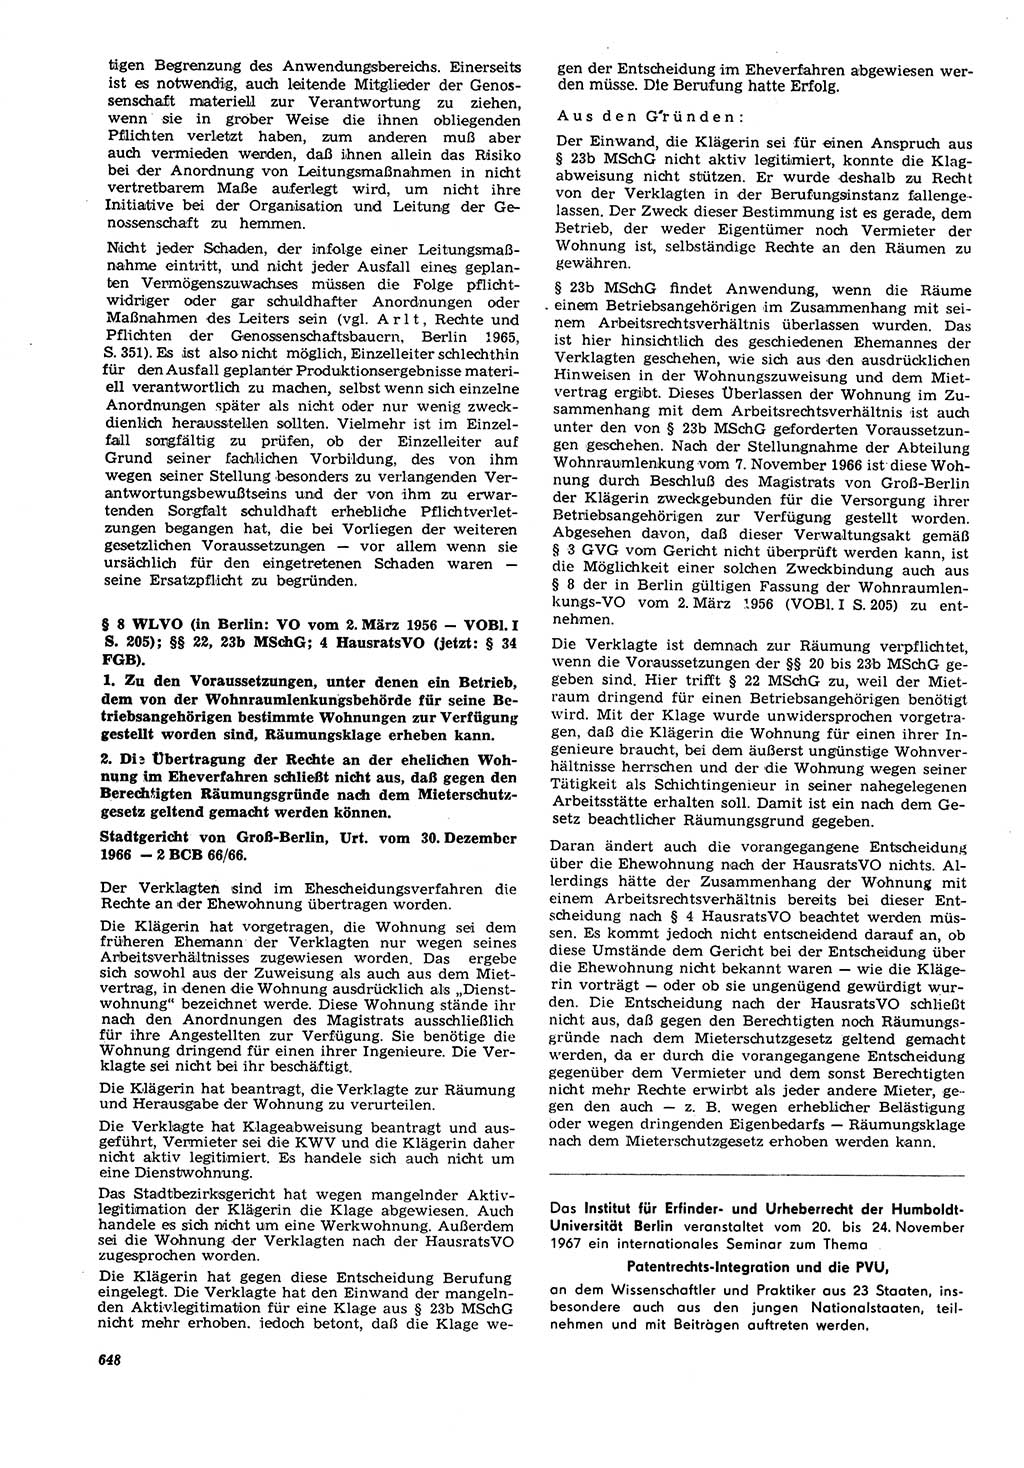 Neue Justiz (NJ), Zeitschrift für Recht und Rechtswissenschaft [Deutsche Demokratische Republik (DDR)], 21. Jahrgang 1967, Seite 648 (NJ DDR 1967, S. 648)